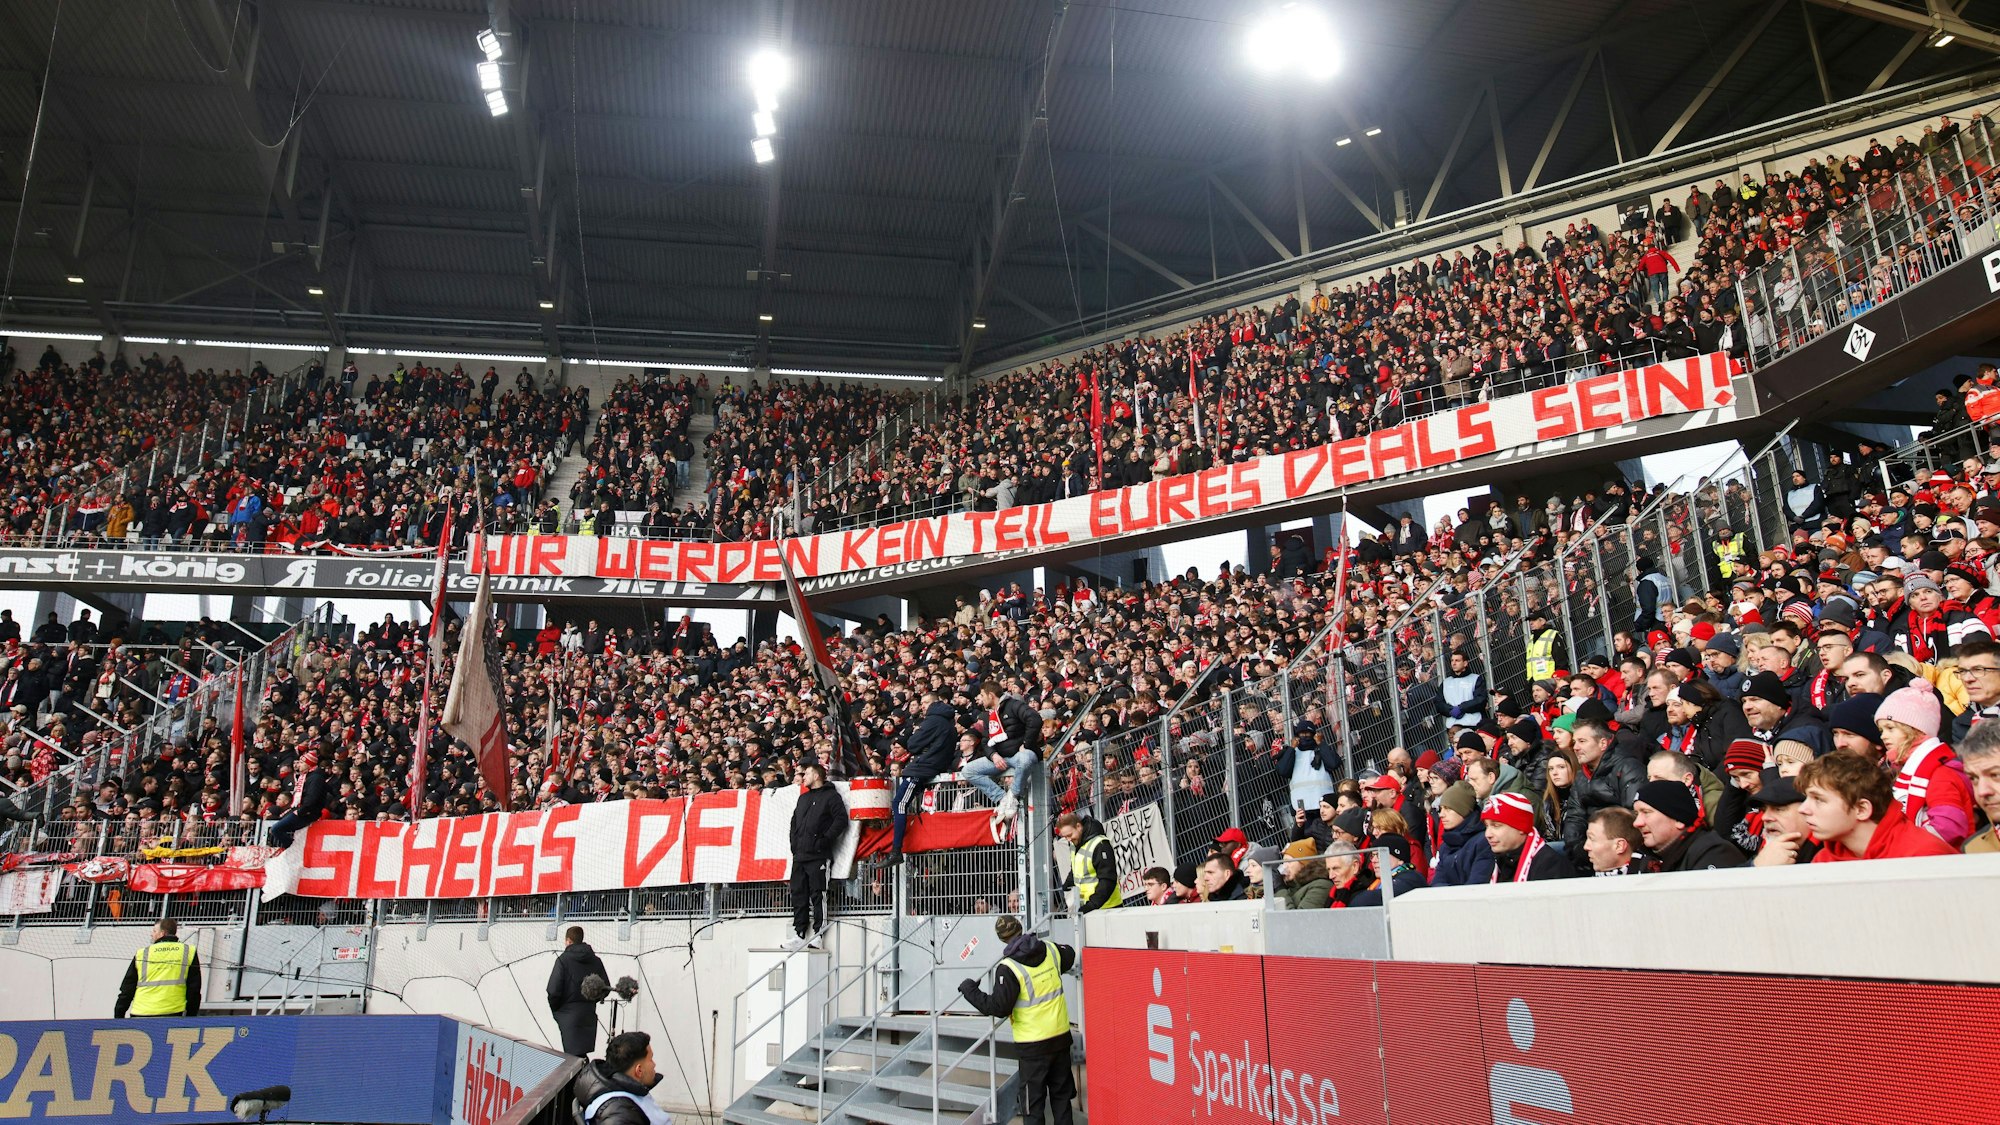 Auswärtsspiel in Freiburg: Anhänger des 1. FC Köln protestieren gegen die Entscheidung der DFL, den Weg für Investoren bei der Vermarktung frei zu machen.